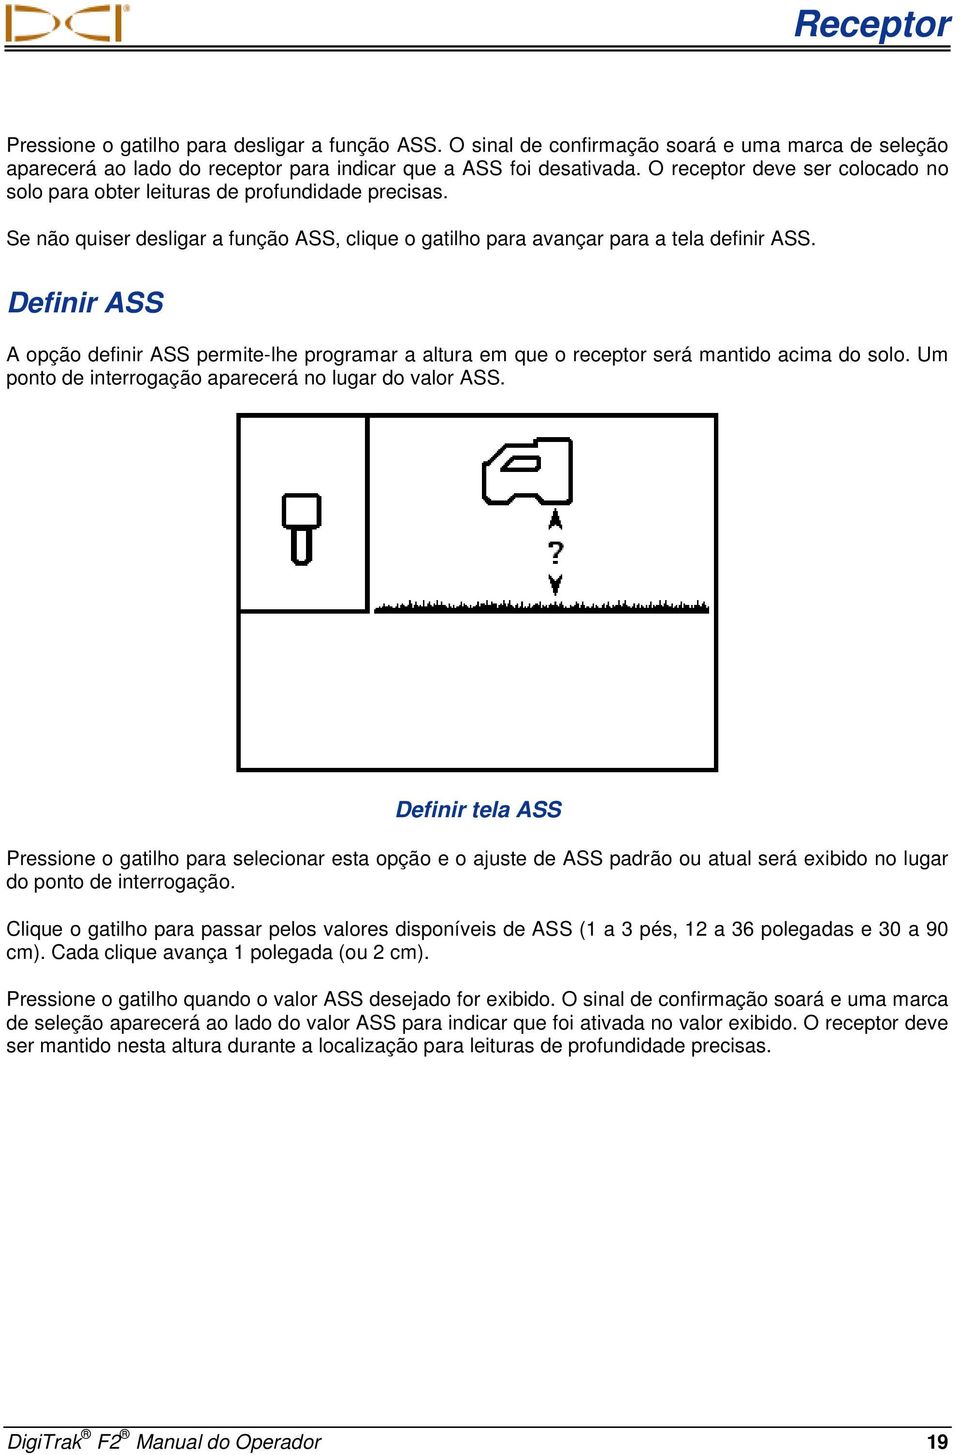 Definir ASS A opção definir ASS permite-lhe programar a altura em que o receptor será mantido acima do solo. Um ponto de interrogação aparecerá no lugar do valor ASS.